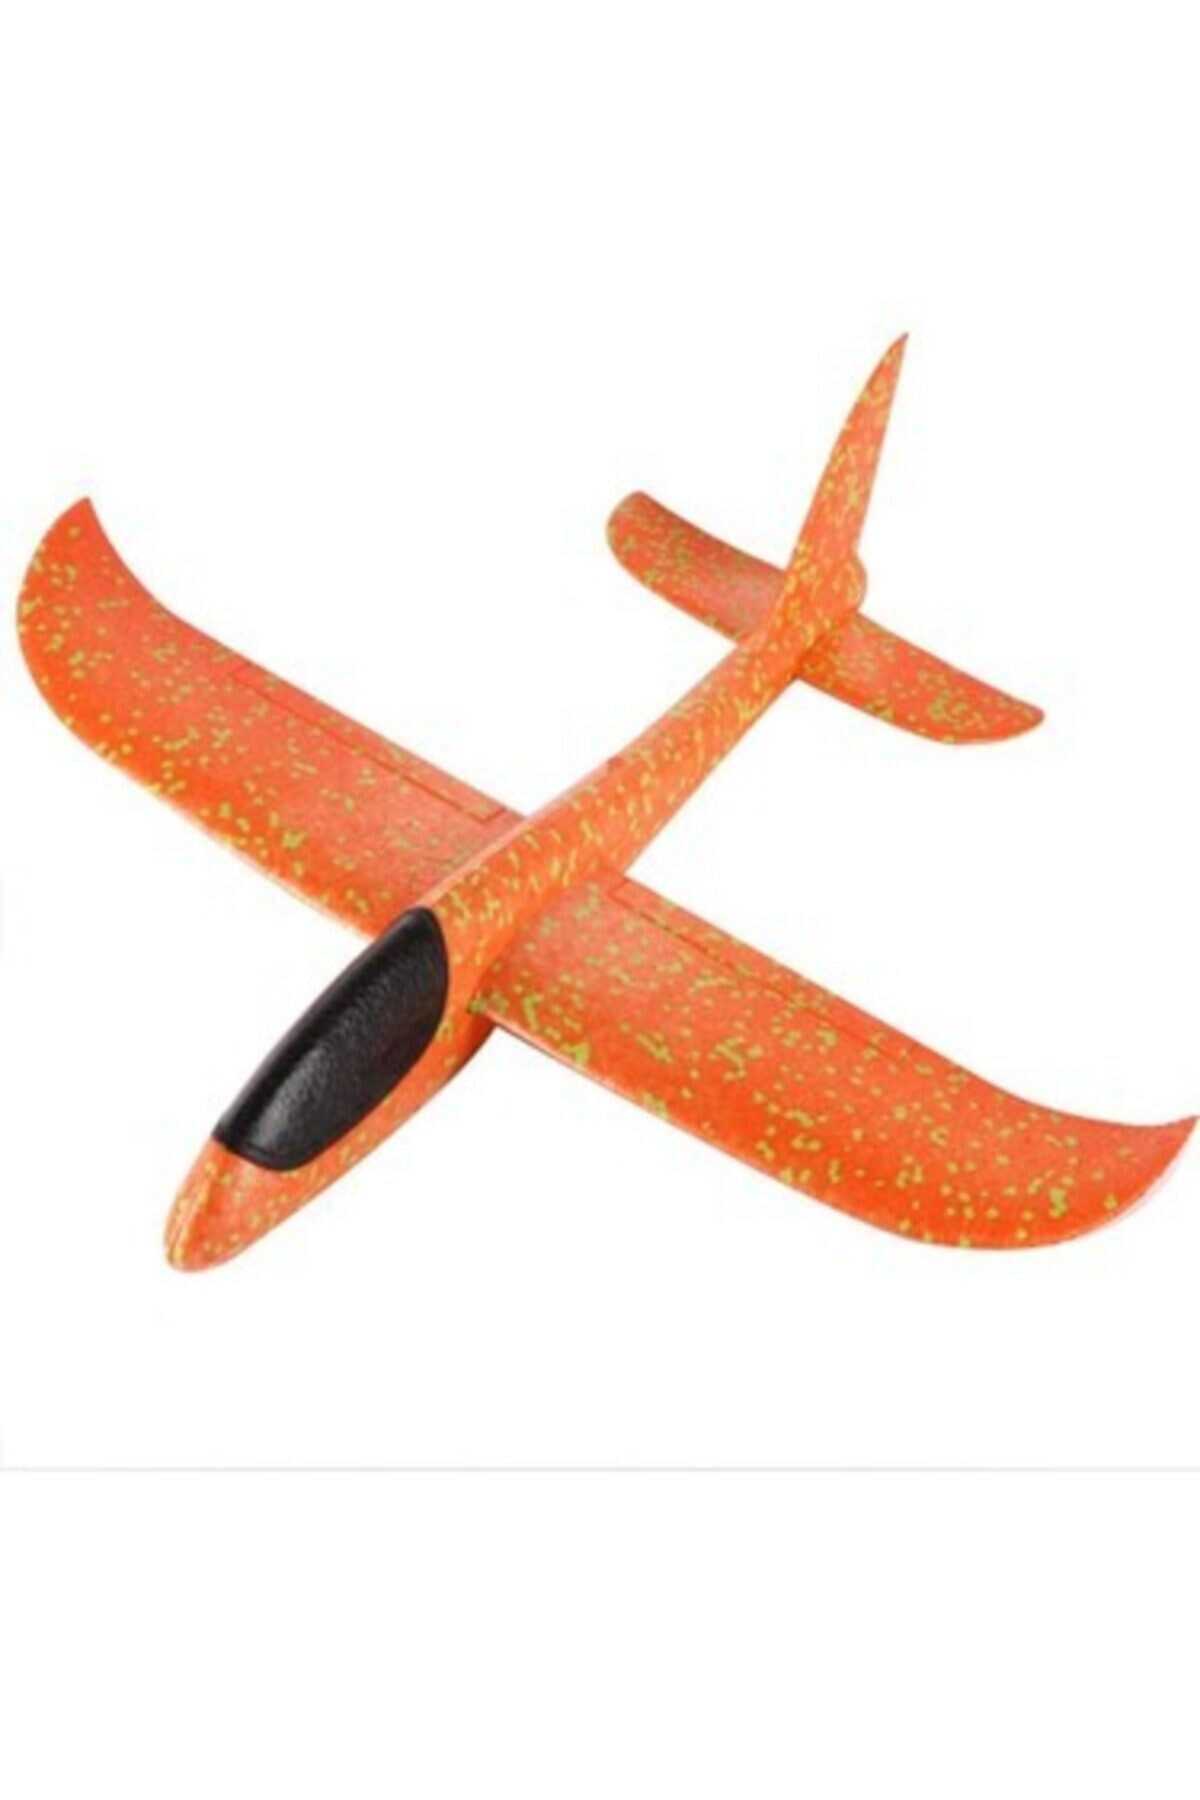 هواپیما اسباب بازی دستی نارنجی 